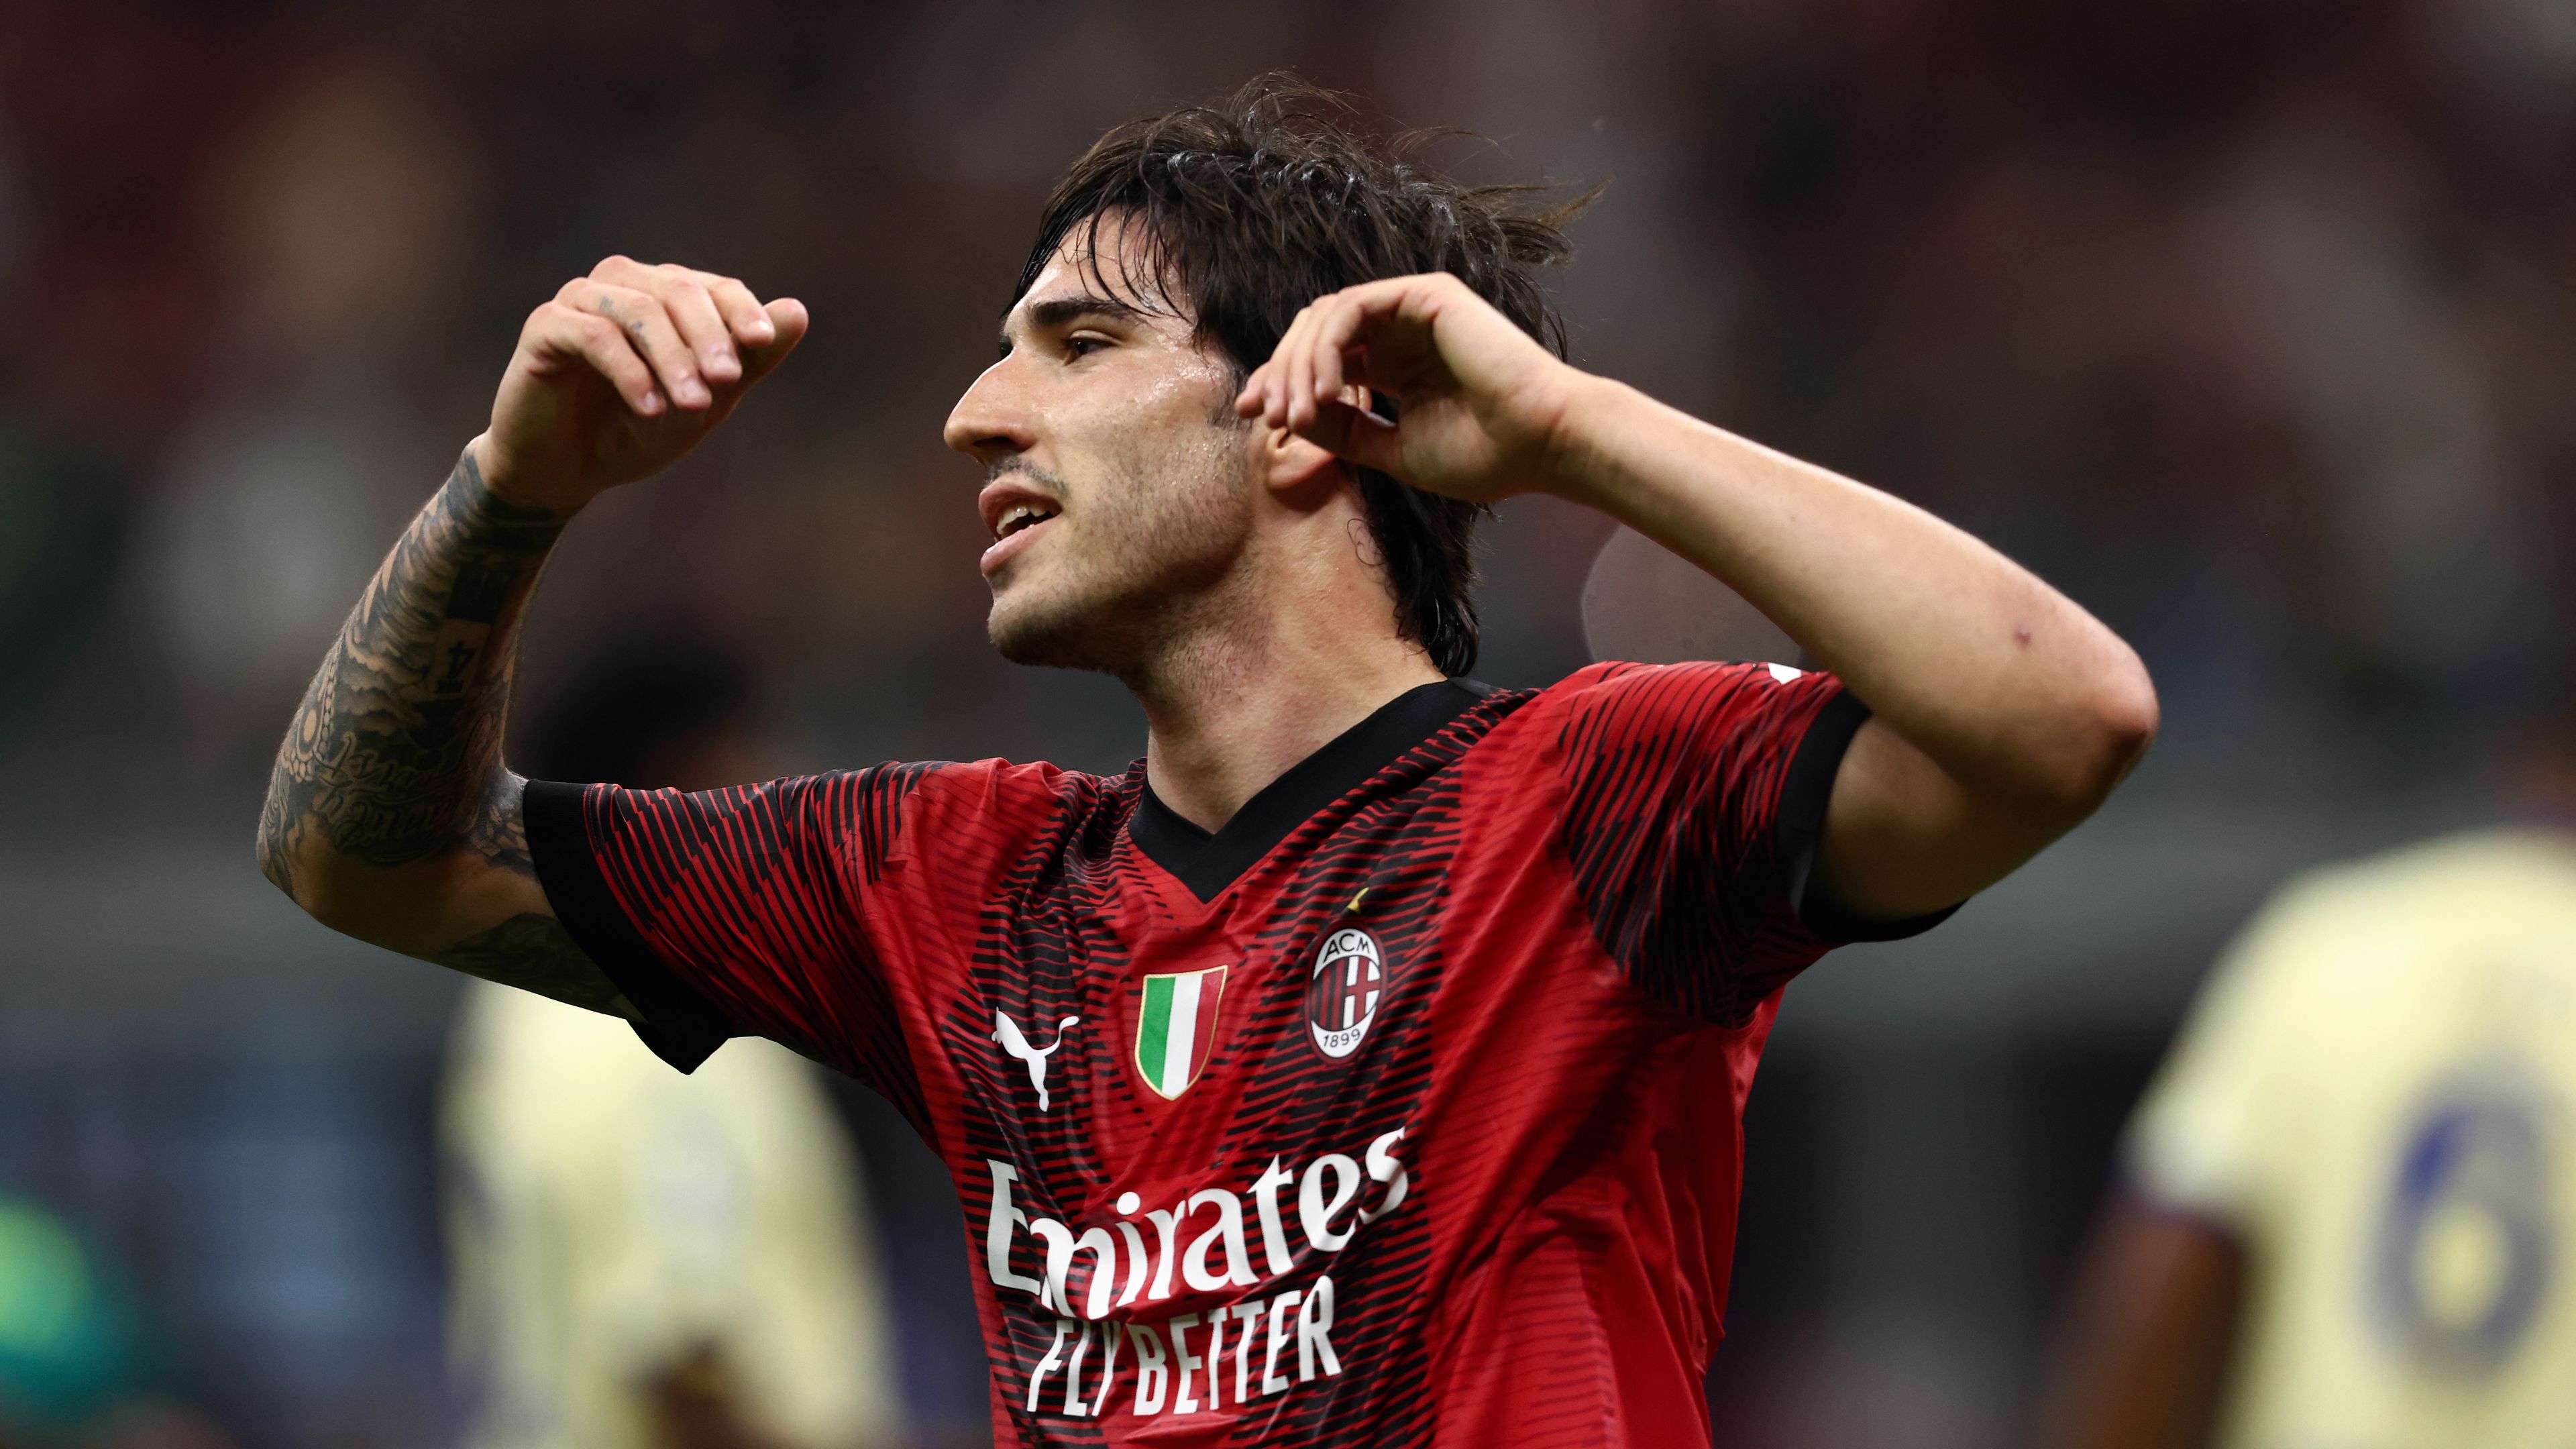 Elsírta magát a Milan játékosa, amikor megtudta, hogy el akarják adni